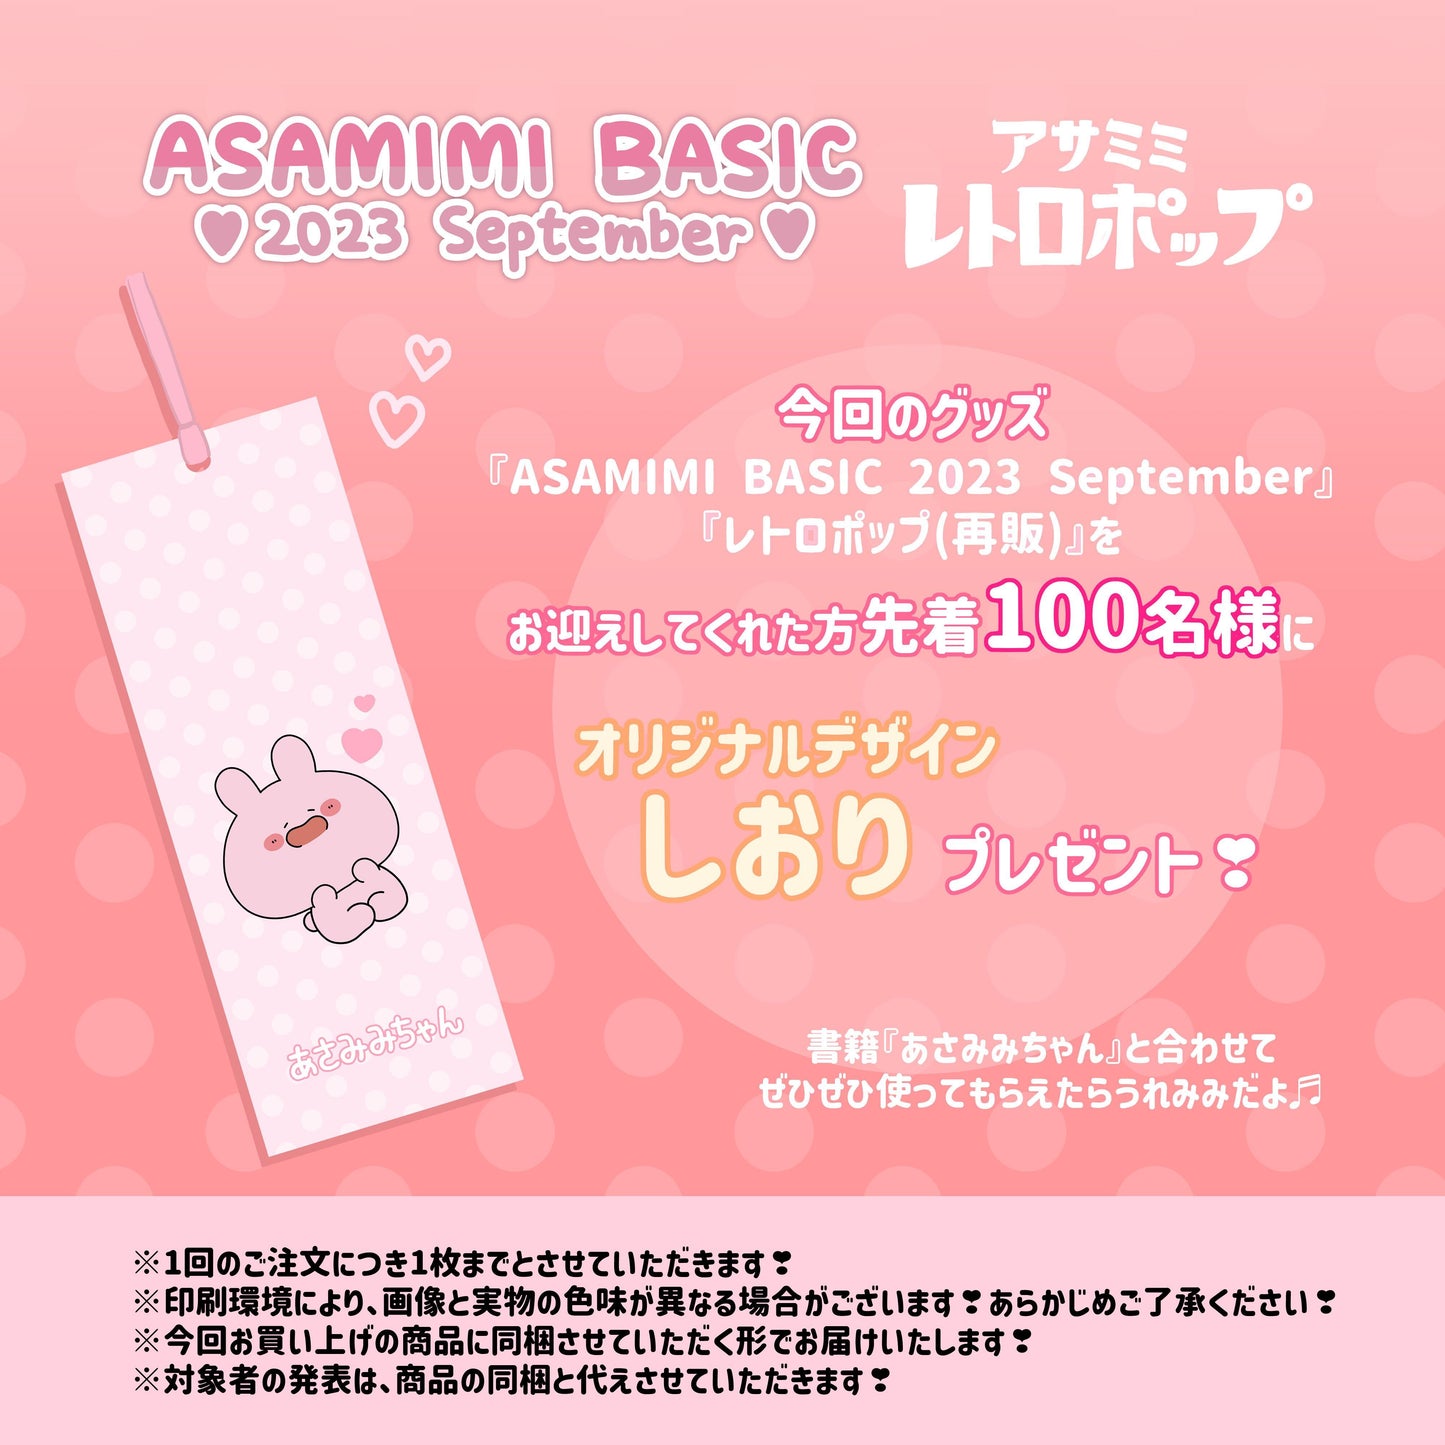 [Asamimi-chan] Kompaktspiegel (rund) (Retro) [ausgeliefert Mitte November]